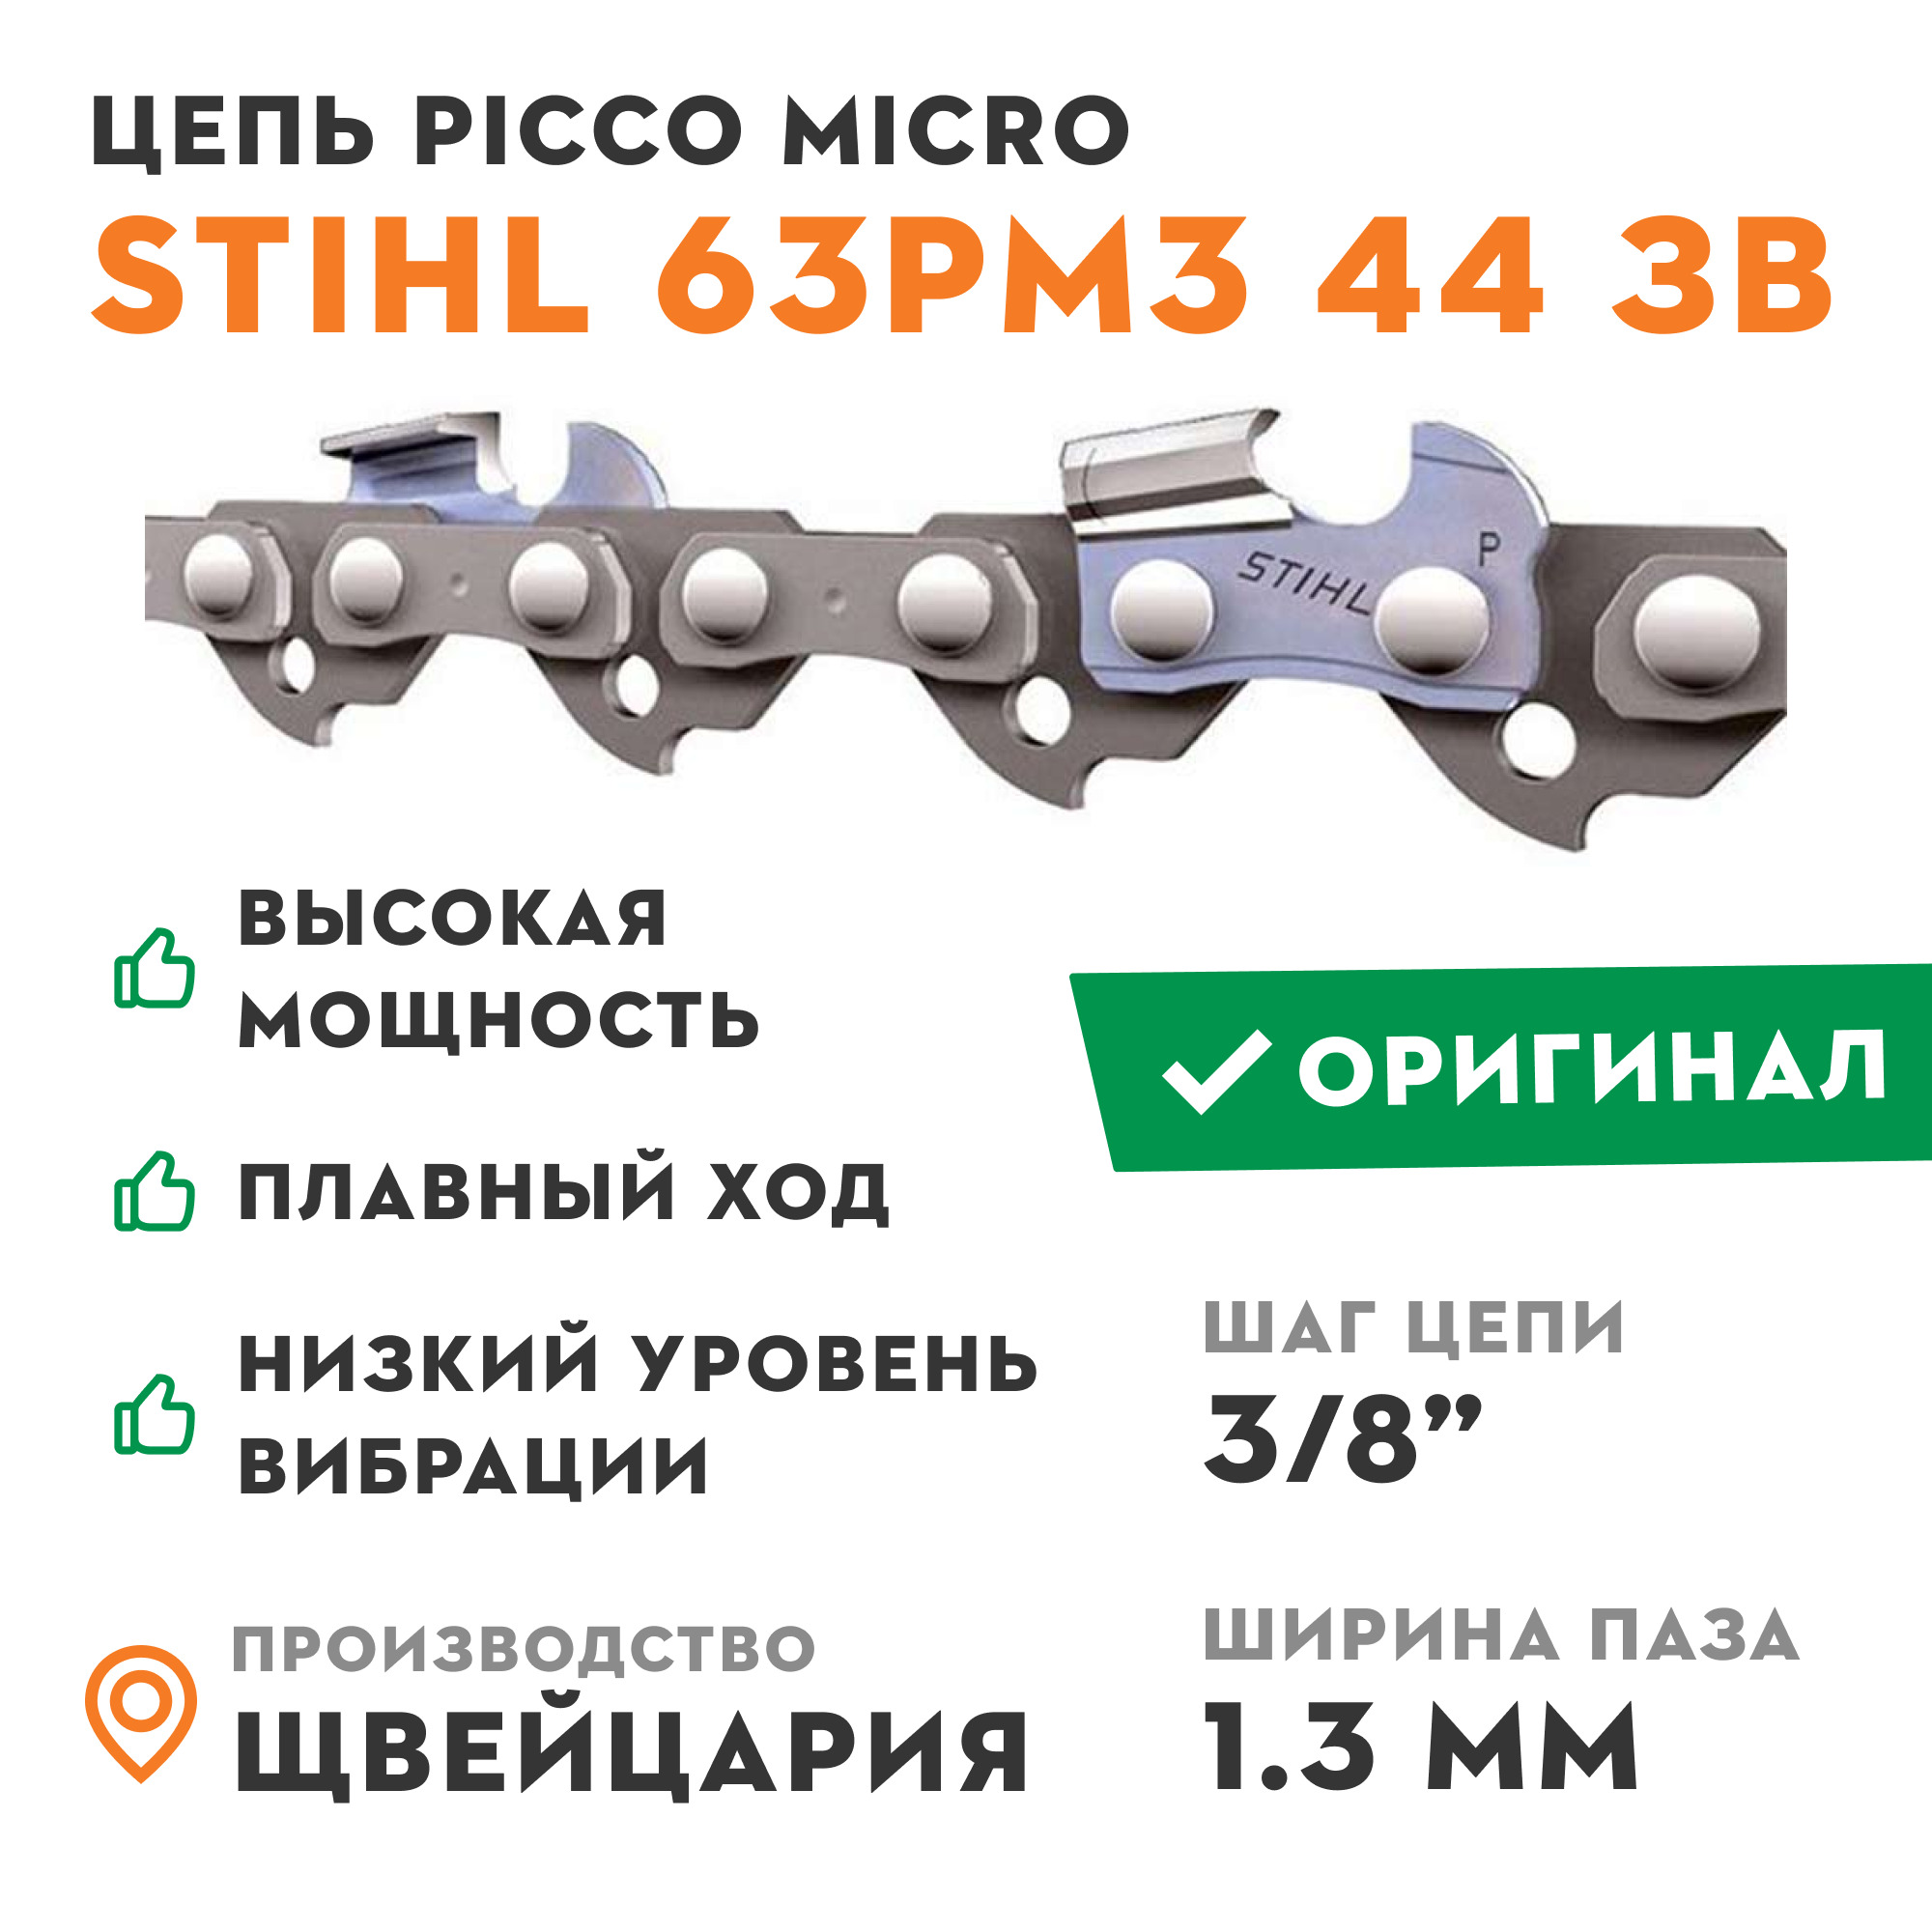 Штиль цепь 55. Цепь для бензопилы Stihl 63 PM Picco Micro, 1.3 мм, шаг 3/8"p, 55 звеньев. Цепь штиль 55 звеньев 3/8 шаг 1.3. Цепь 72 звена Stihl. Цепь для бензопилы Stihl 63pm 3/8" 1.3 мм 16" 55 зв..